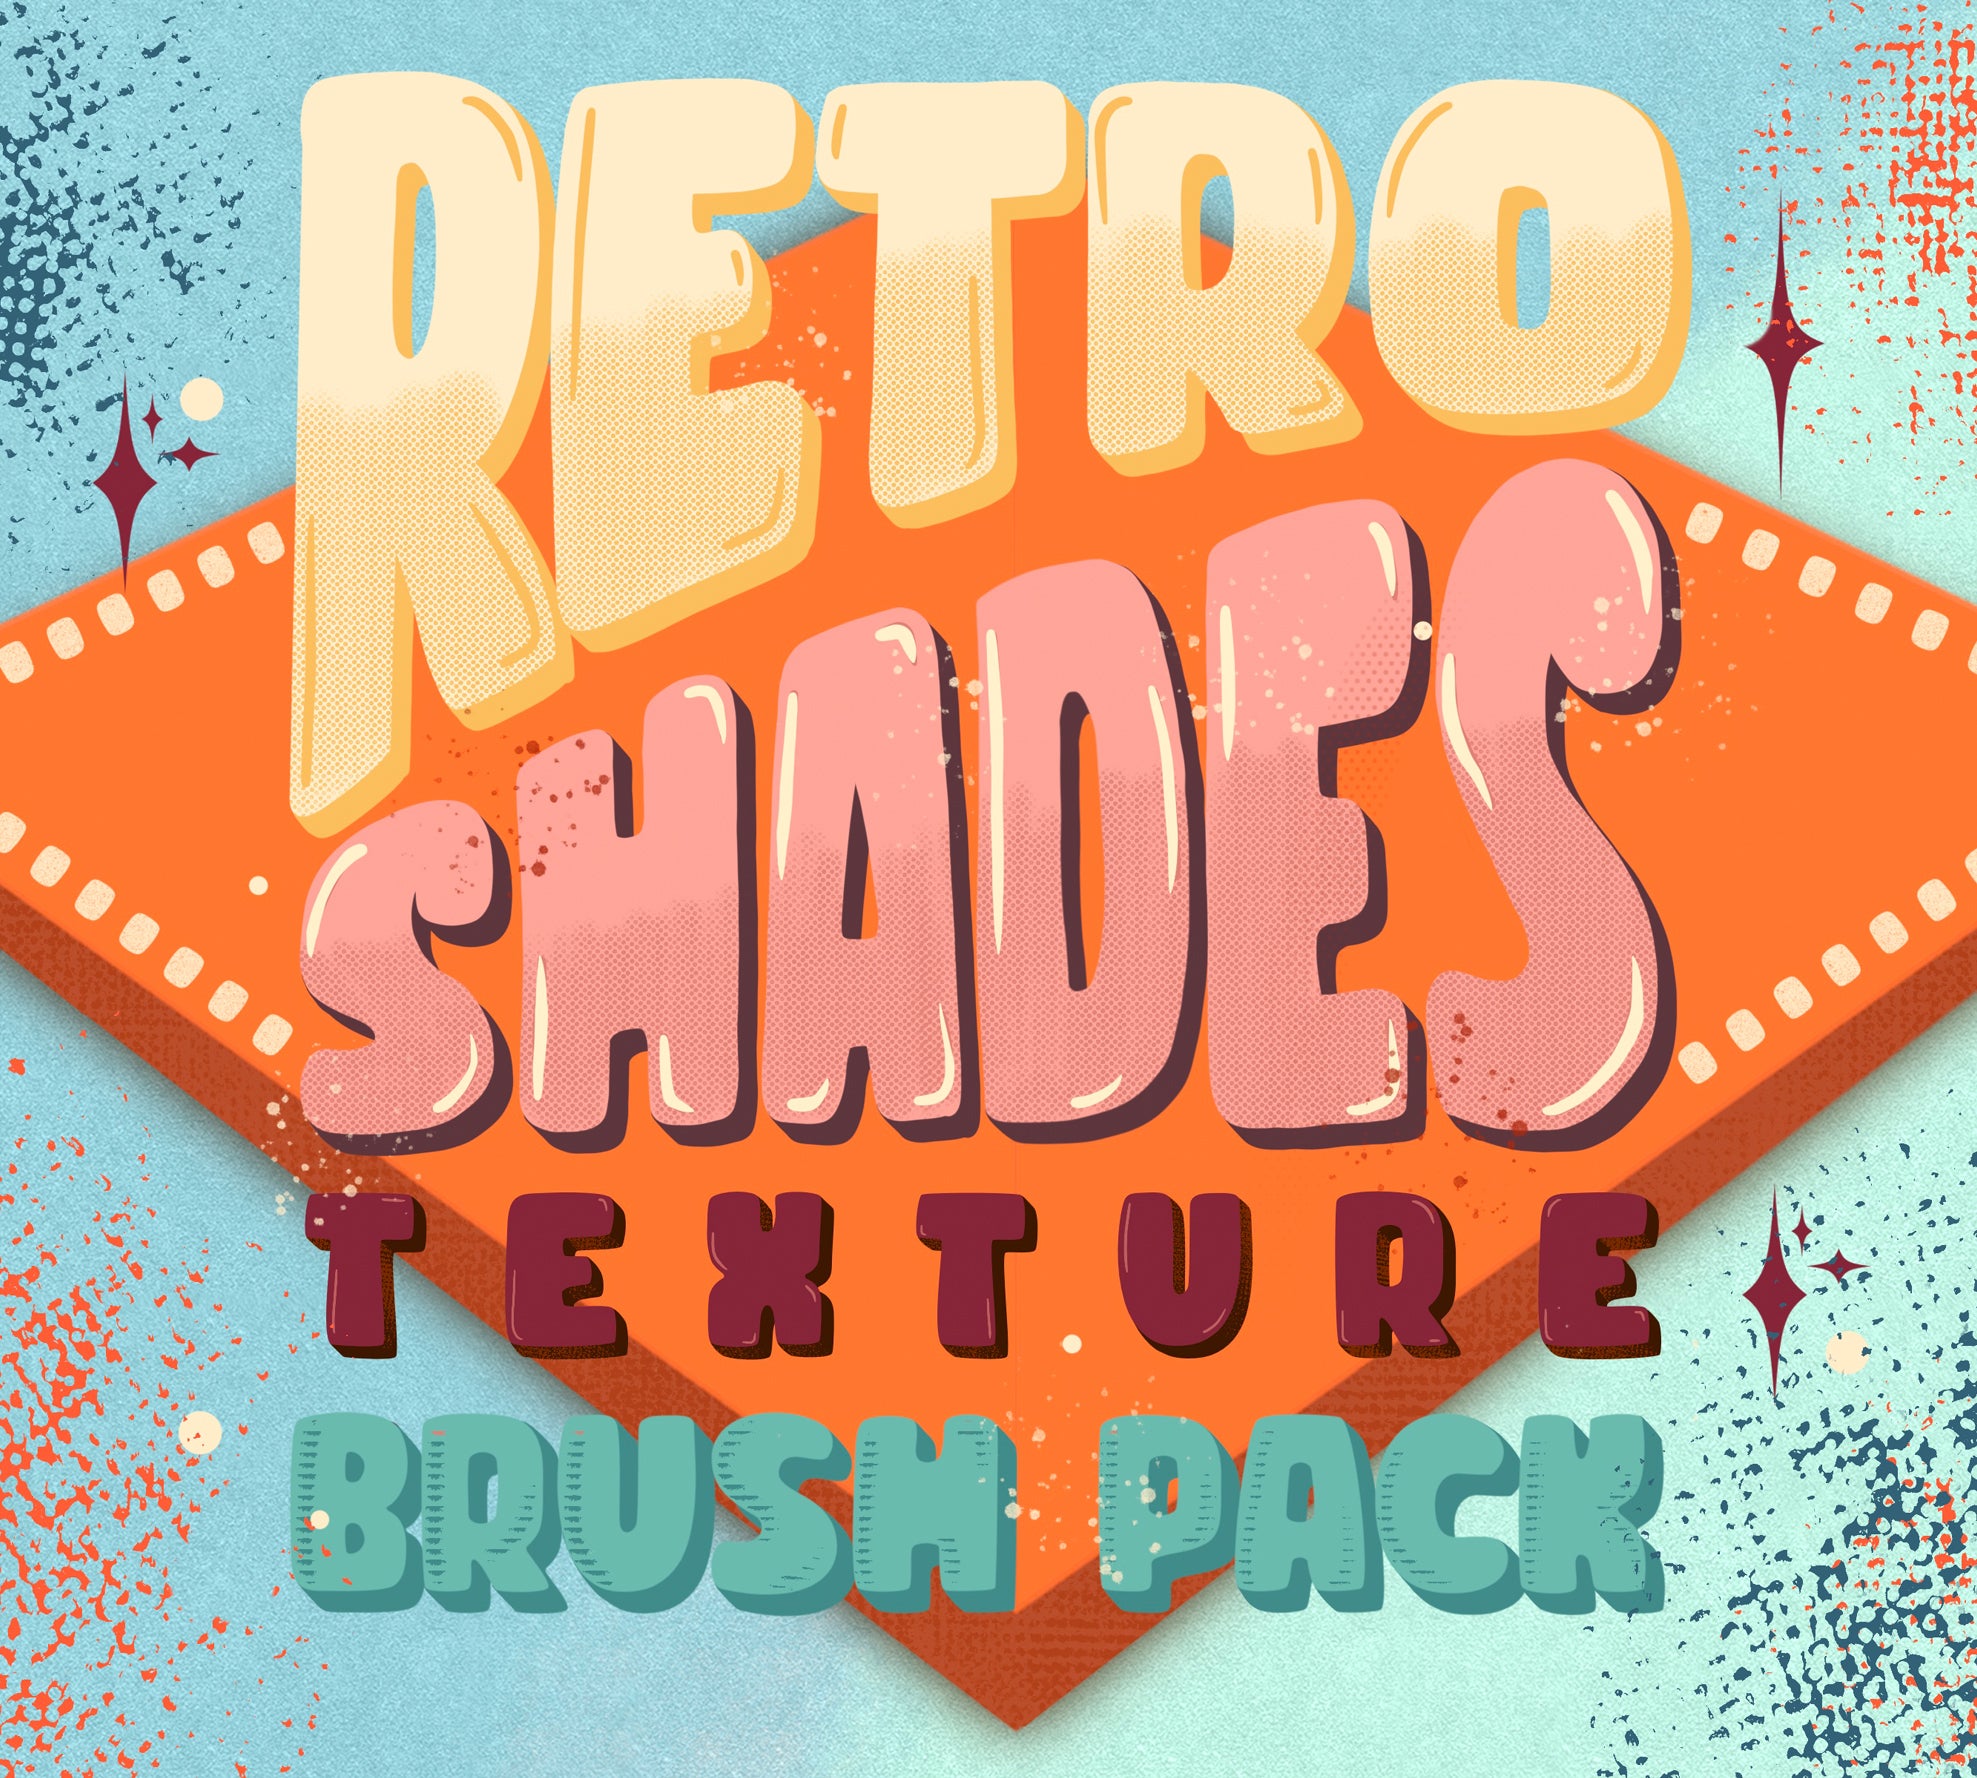 Retro Shades Texture Brush Pack